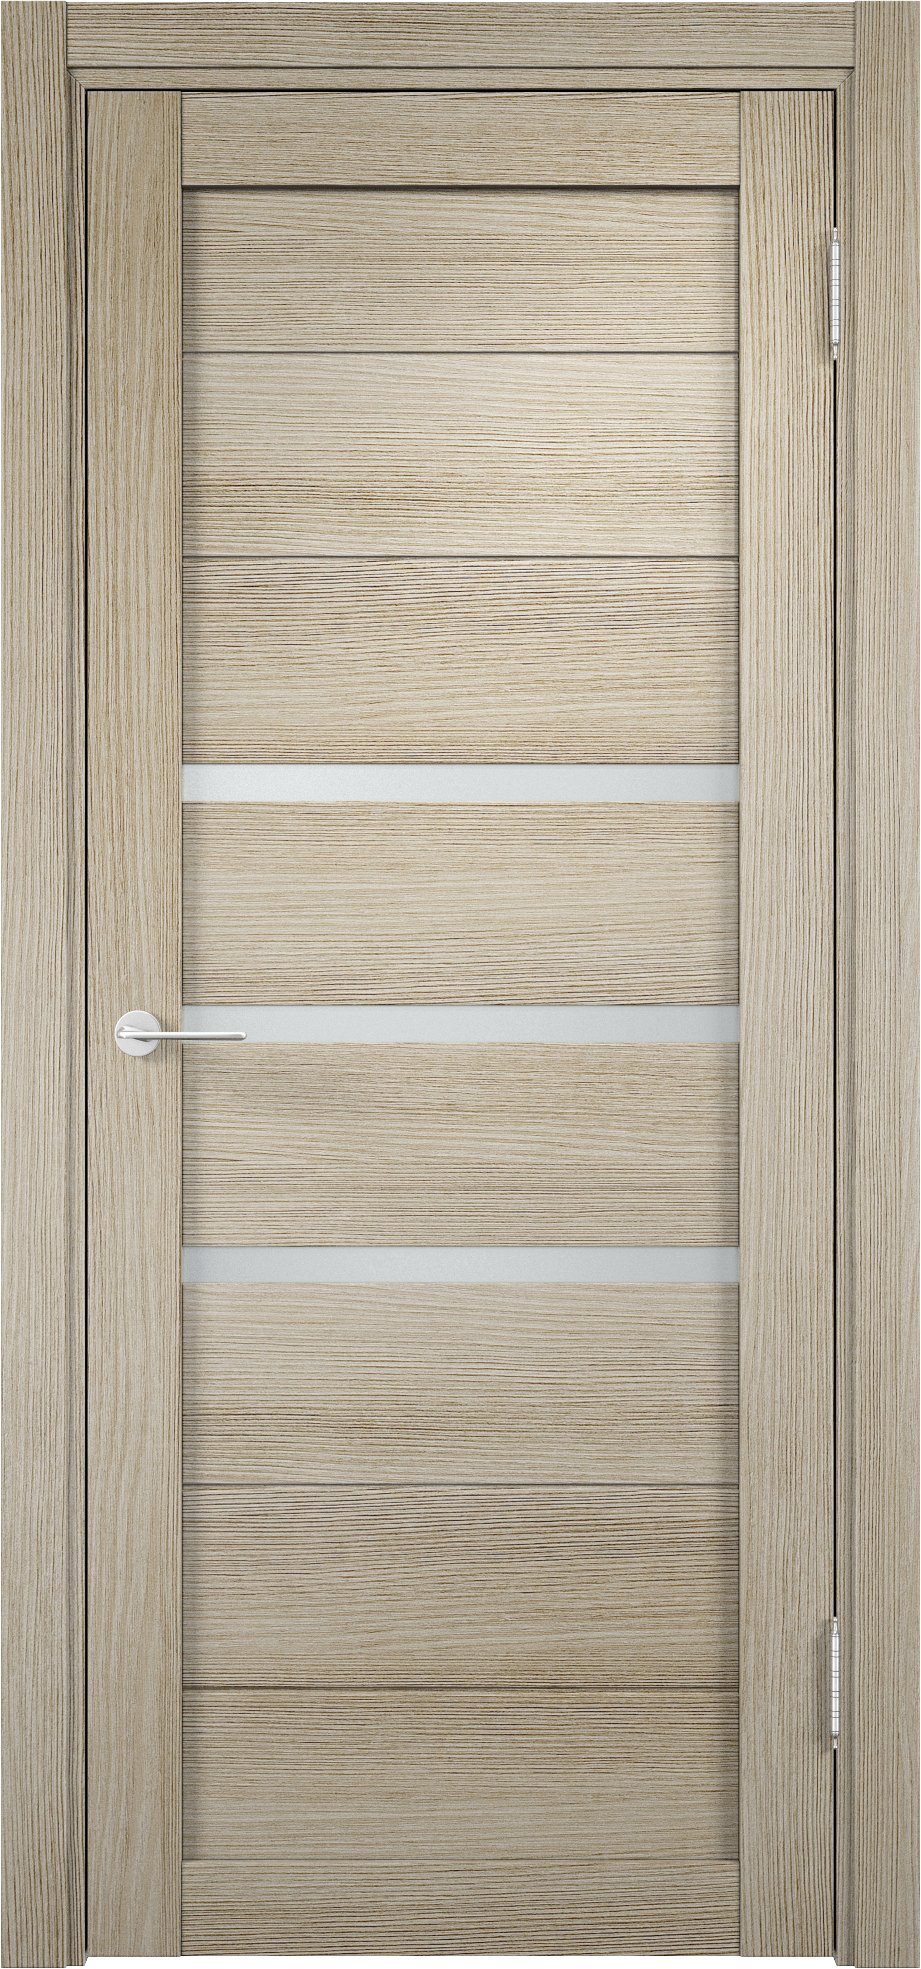 93718198 Дверь межкомнатная Мюнхен (01) остекленная финиш-бумага цвет дуб дымчатый 200 x 80 см STLM-0554466 ELDORF